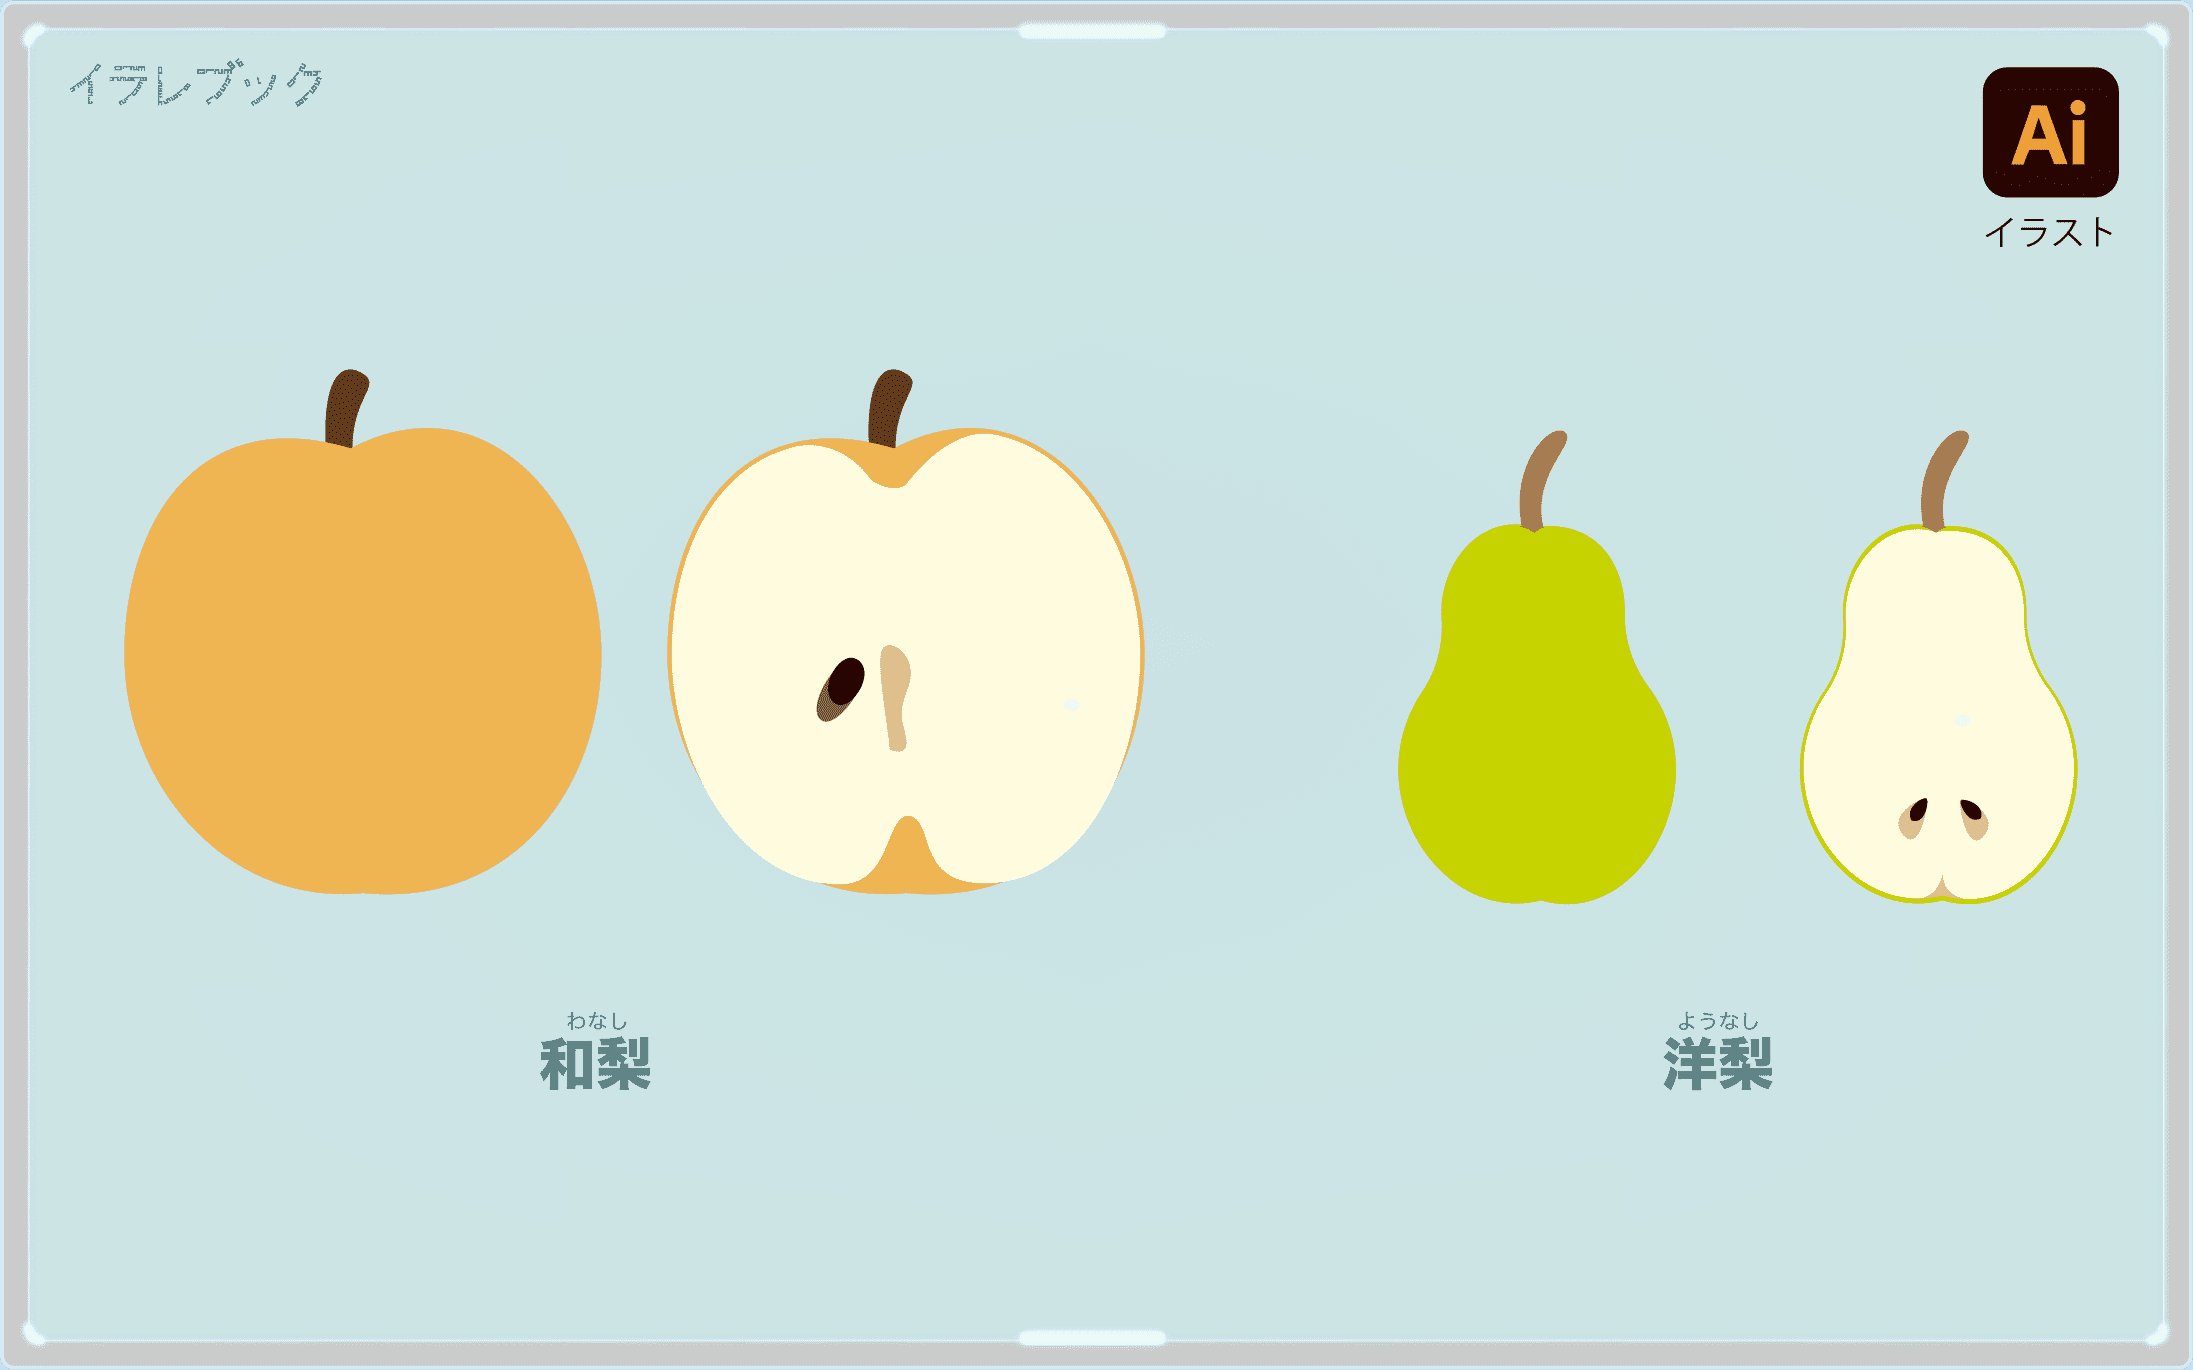 梨 シャキシャキの秋の味覚 カロリー 栄養 洋梨と和梨の違いや共通点を解説 Pear